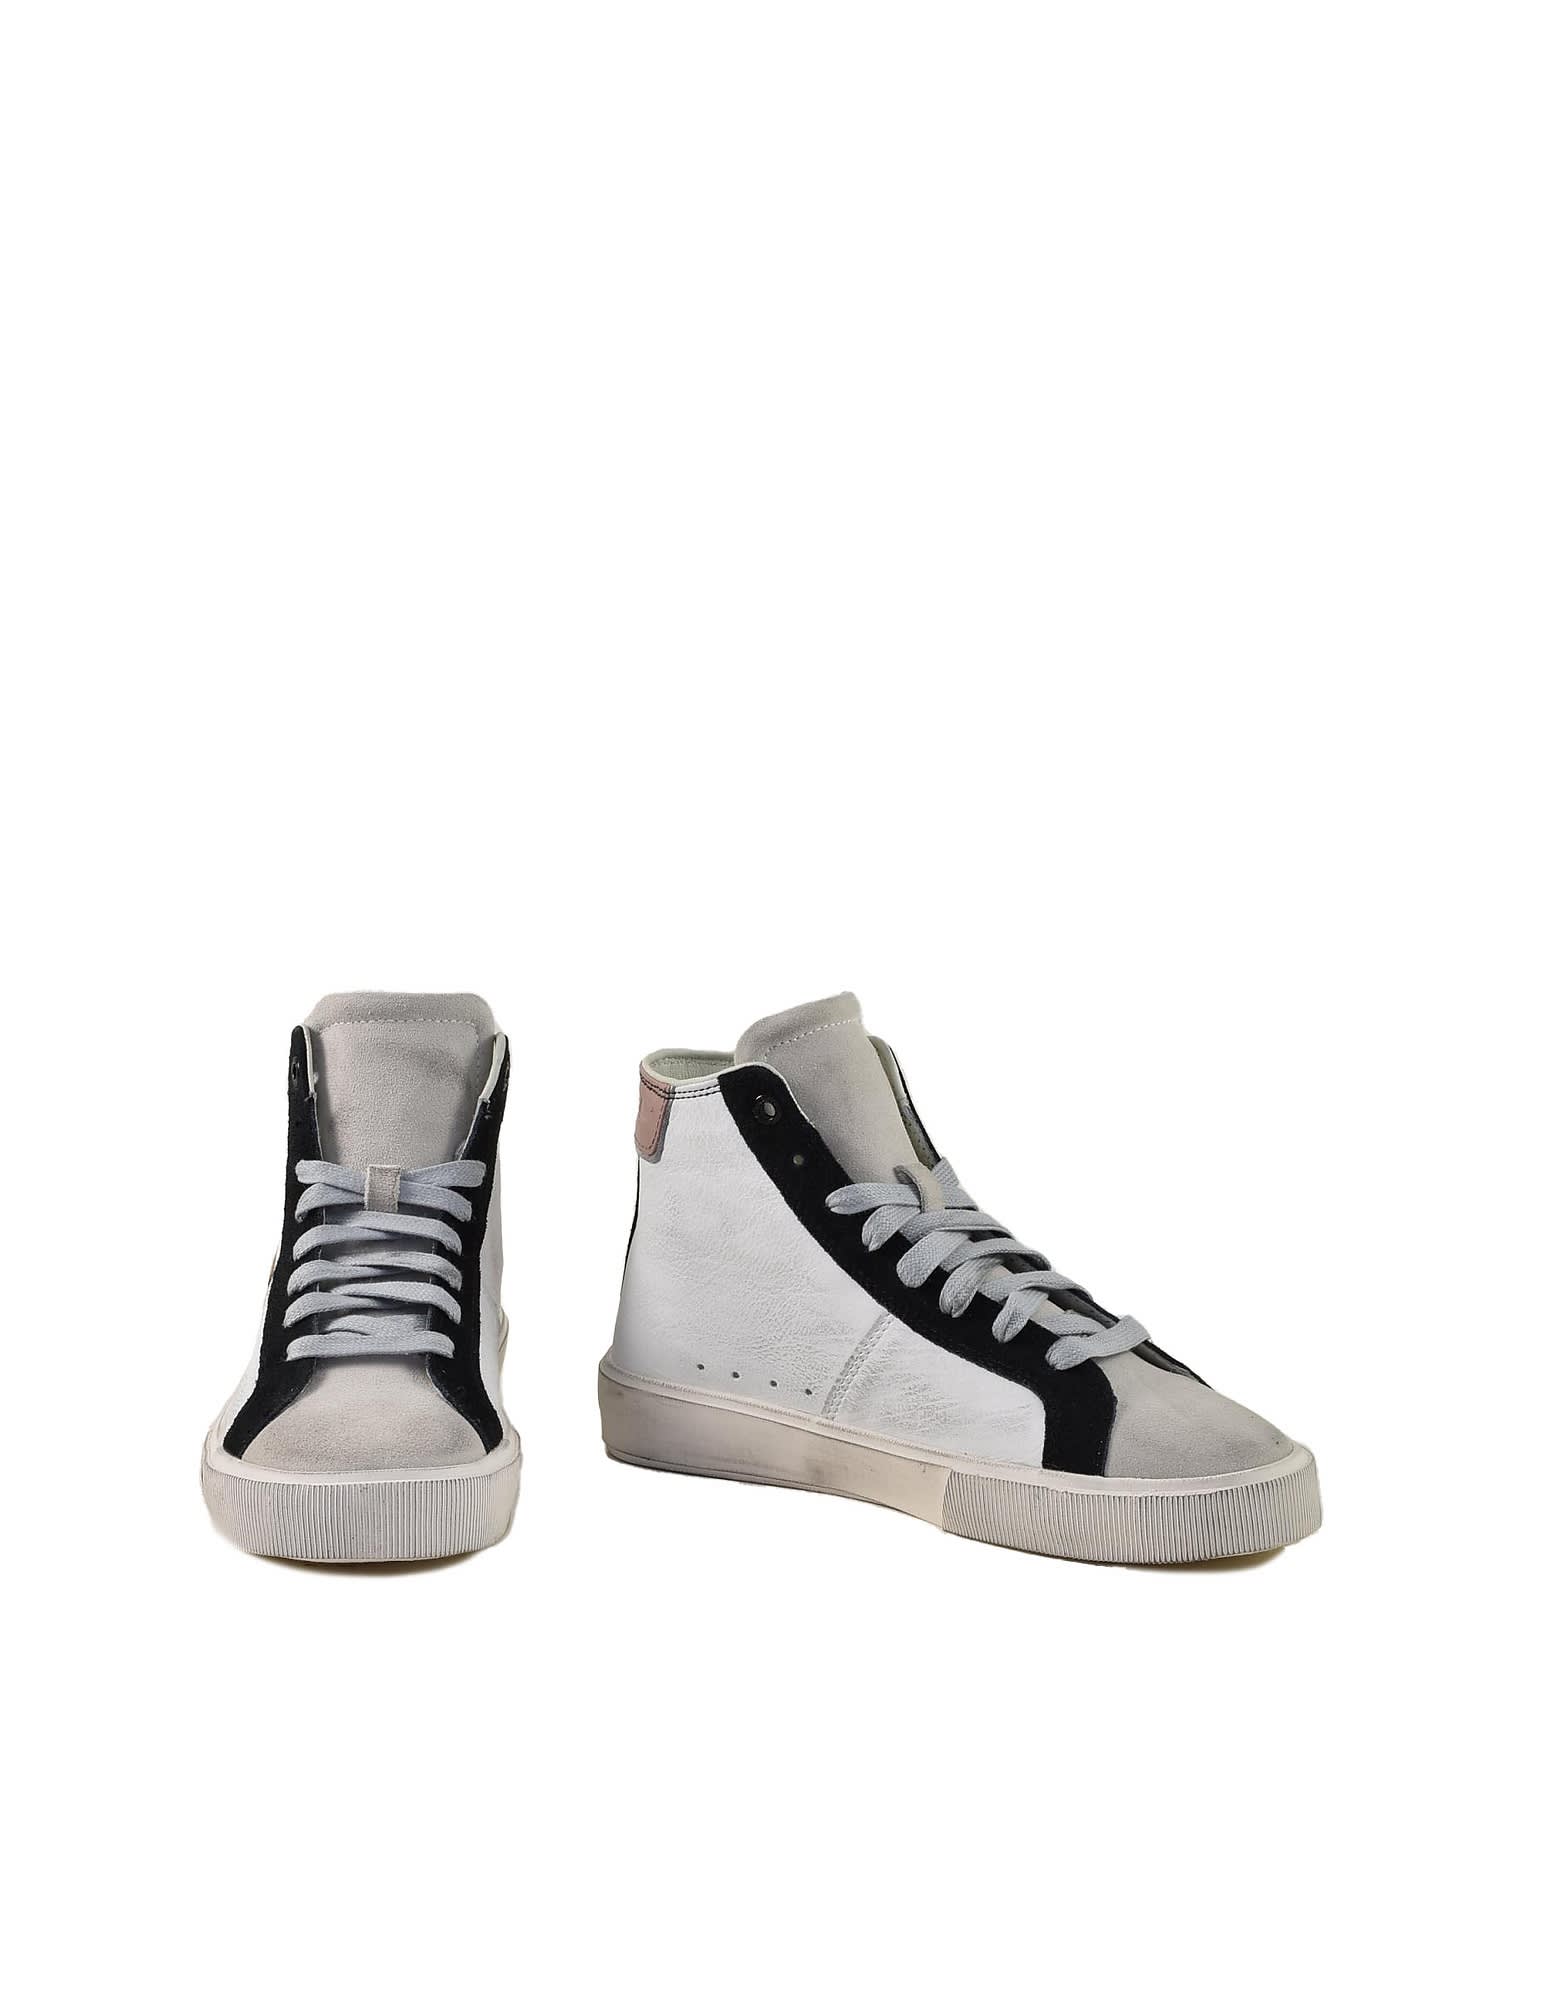 Diesel Womens White / Gray Sneakers